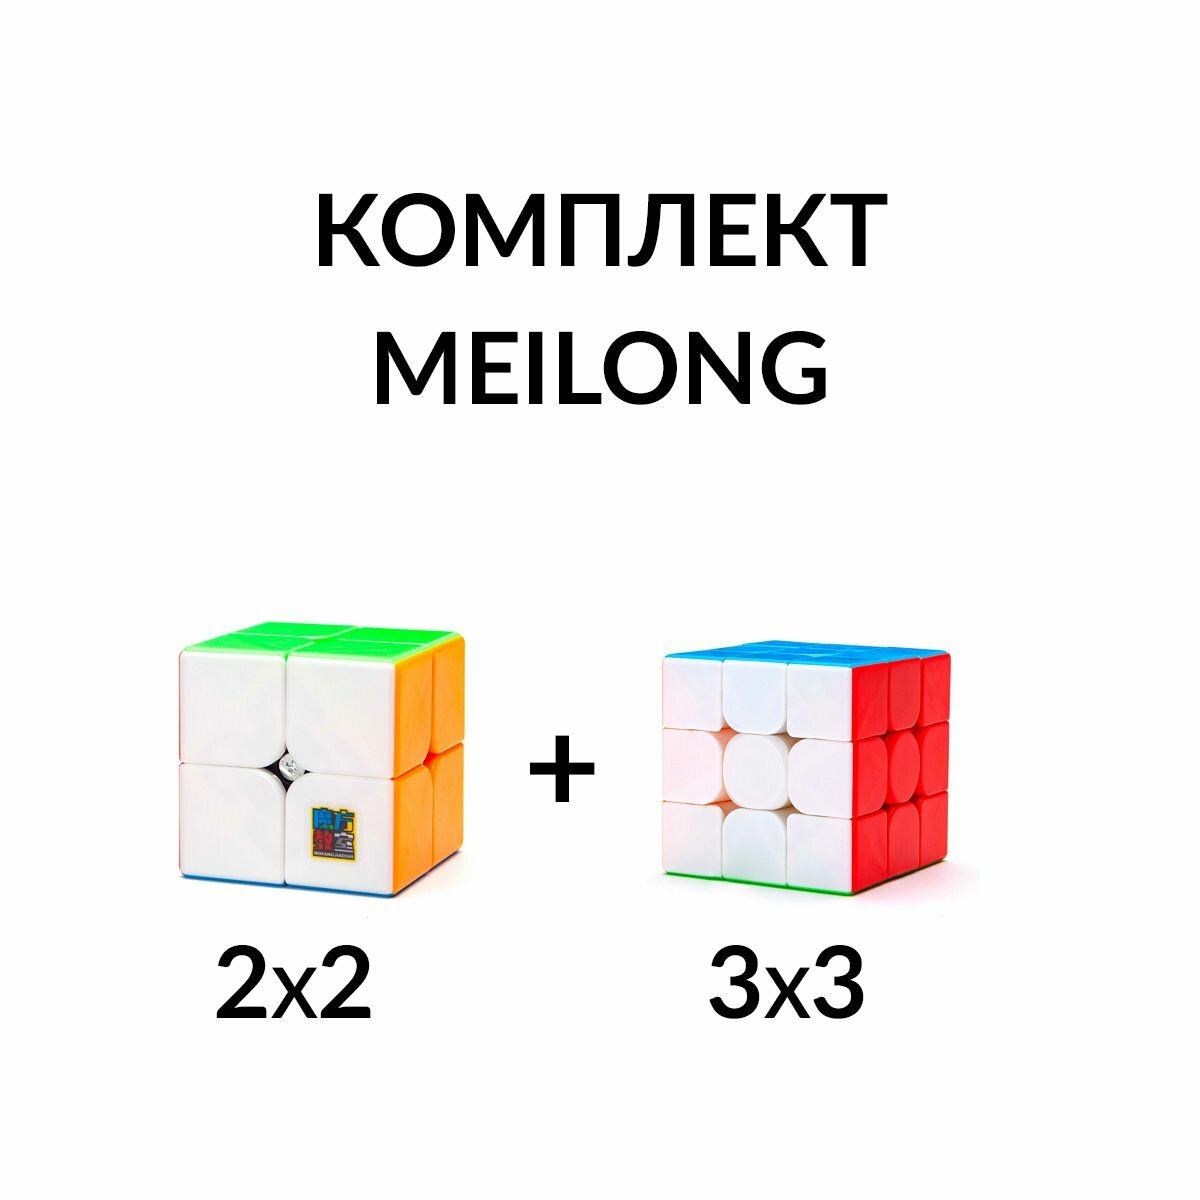 Комплект кубик Рубика бюджетный для начинающих 2х2 + 3х3 MoYu MeiLong